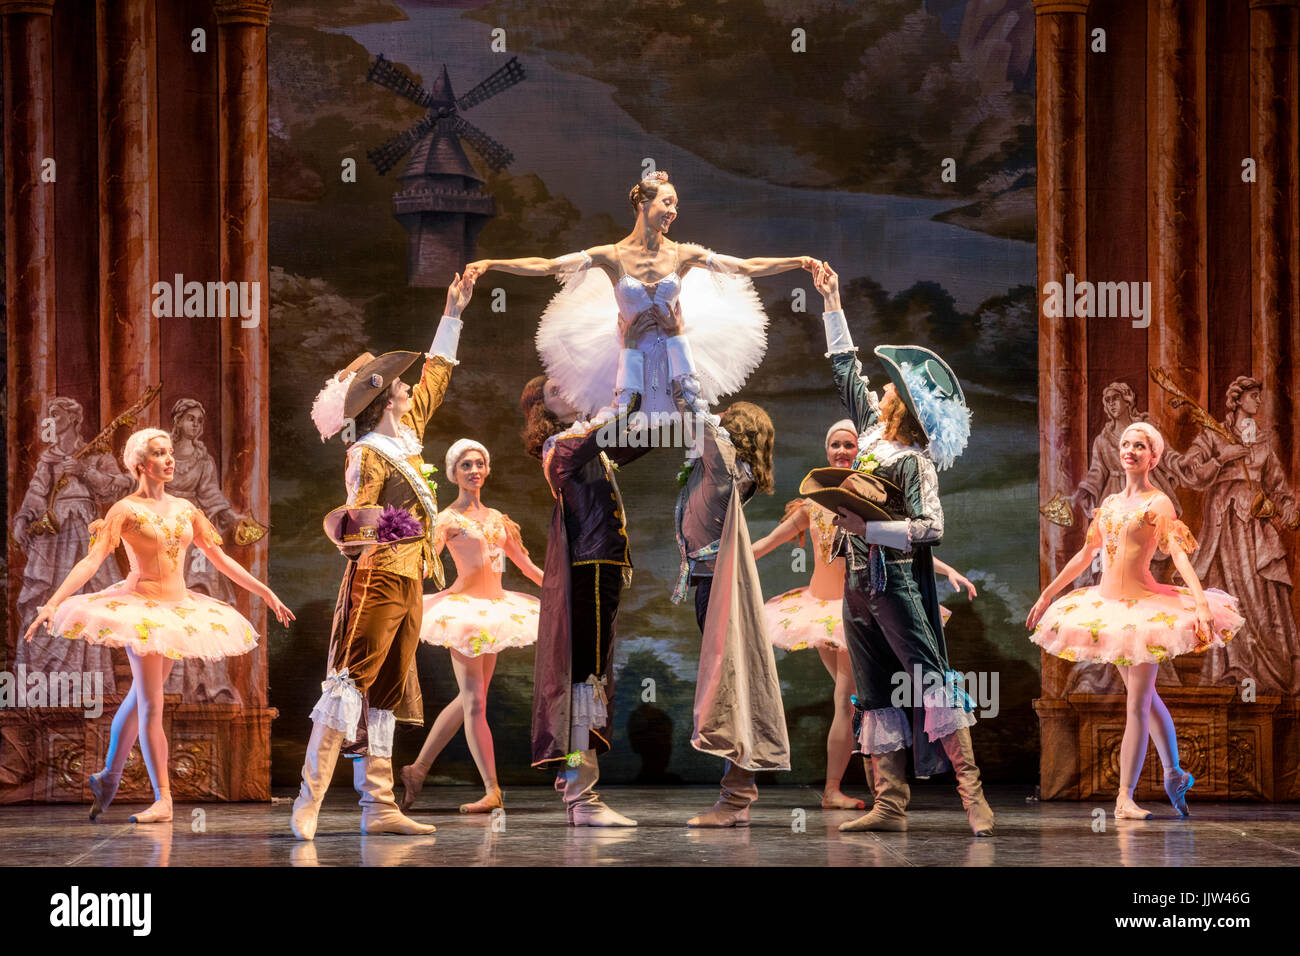 Escena del ballet "bella durmiente" del Ballet Teatro de la clásica coreografía de Elik Melikov en Moscú, Rusia Foto de stock